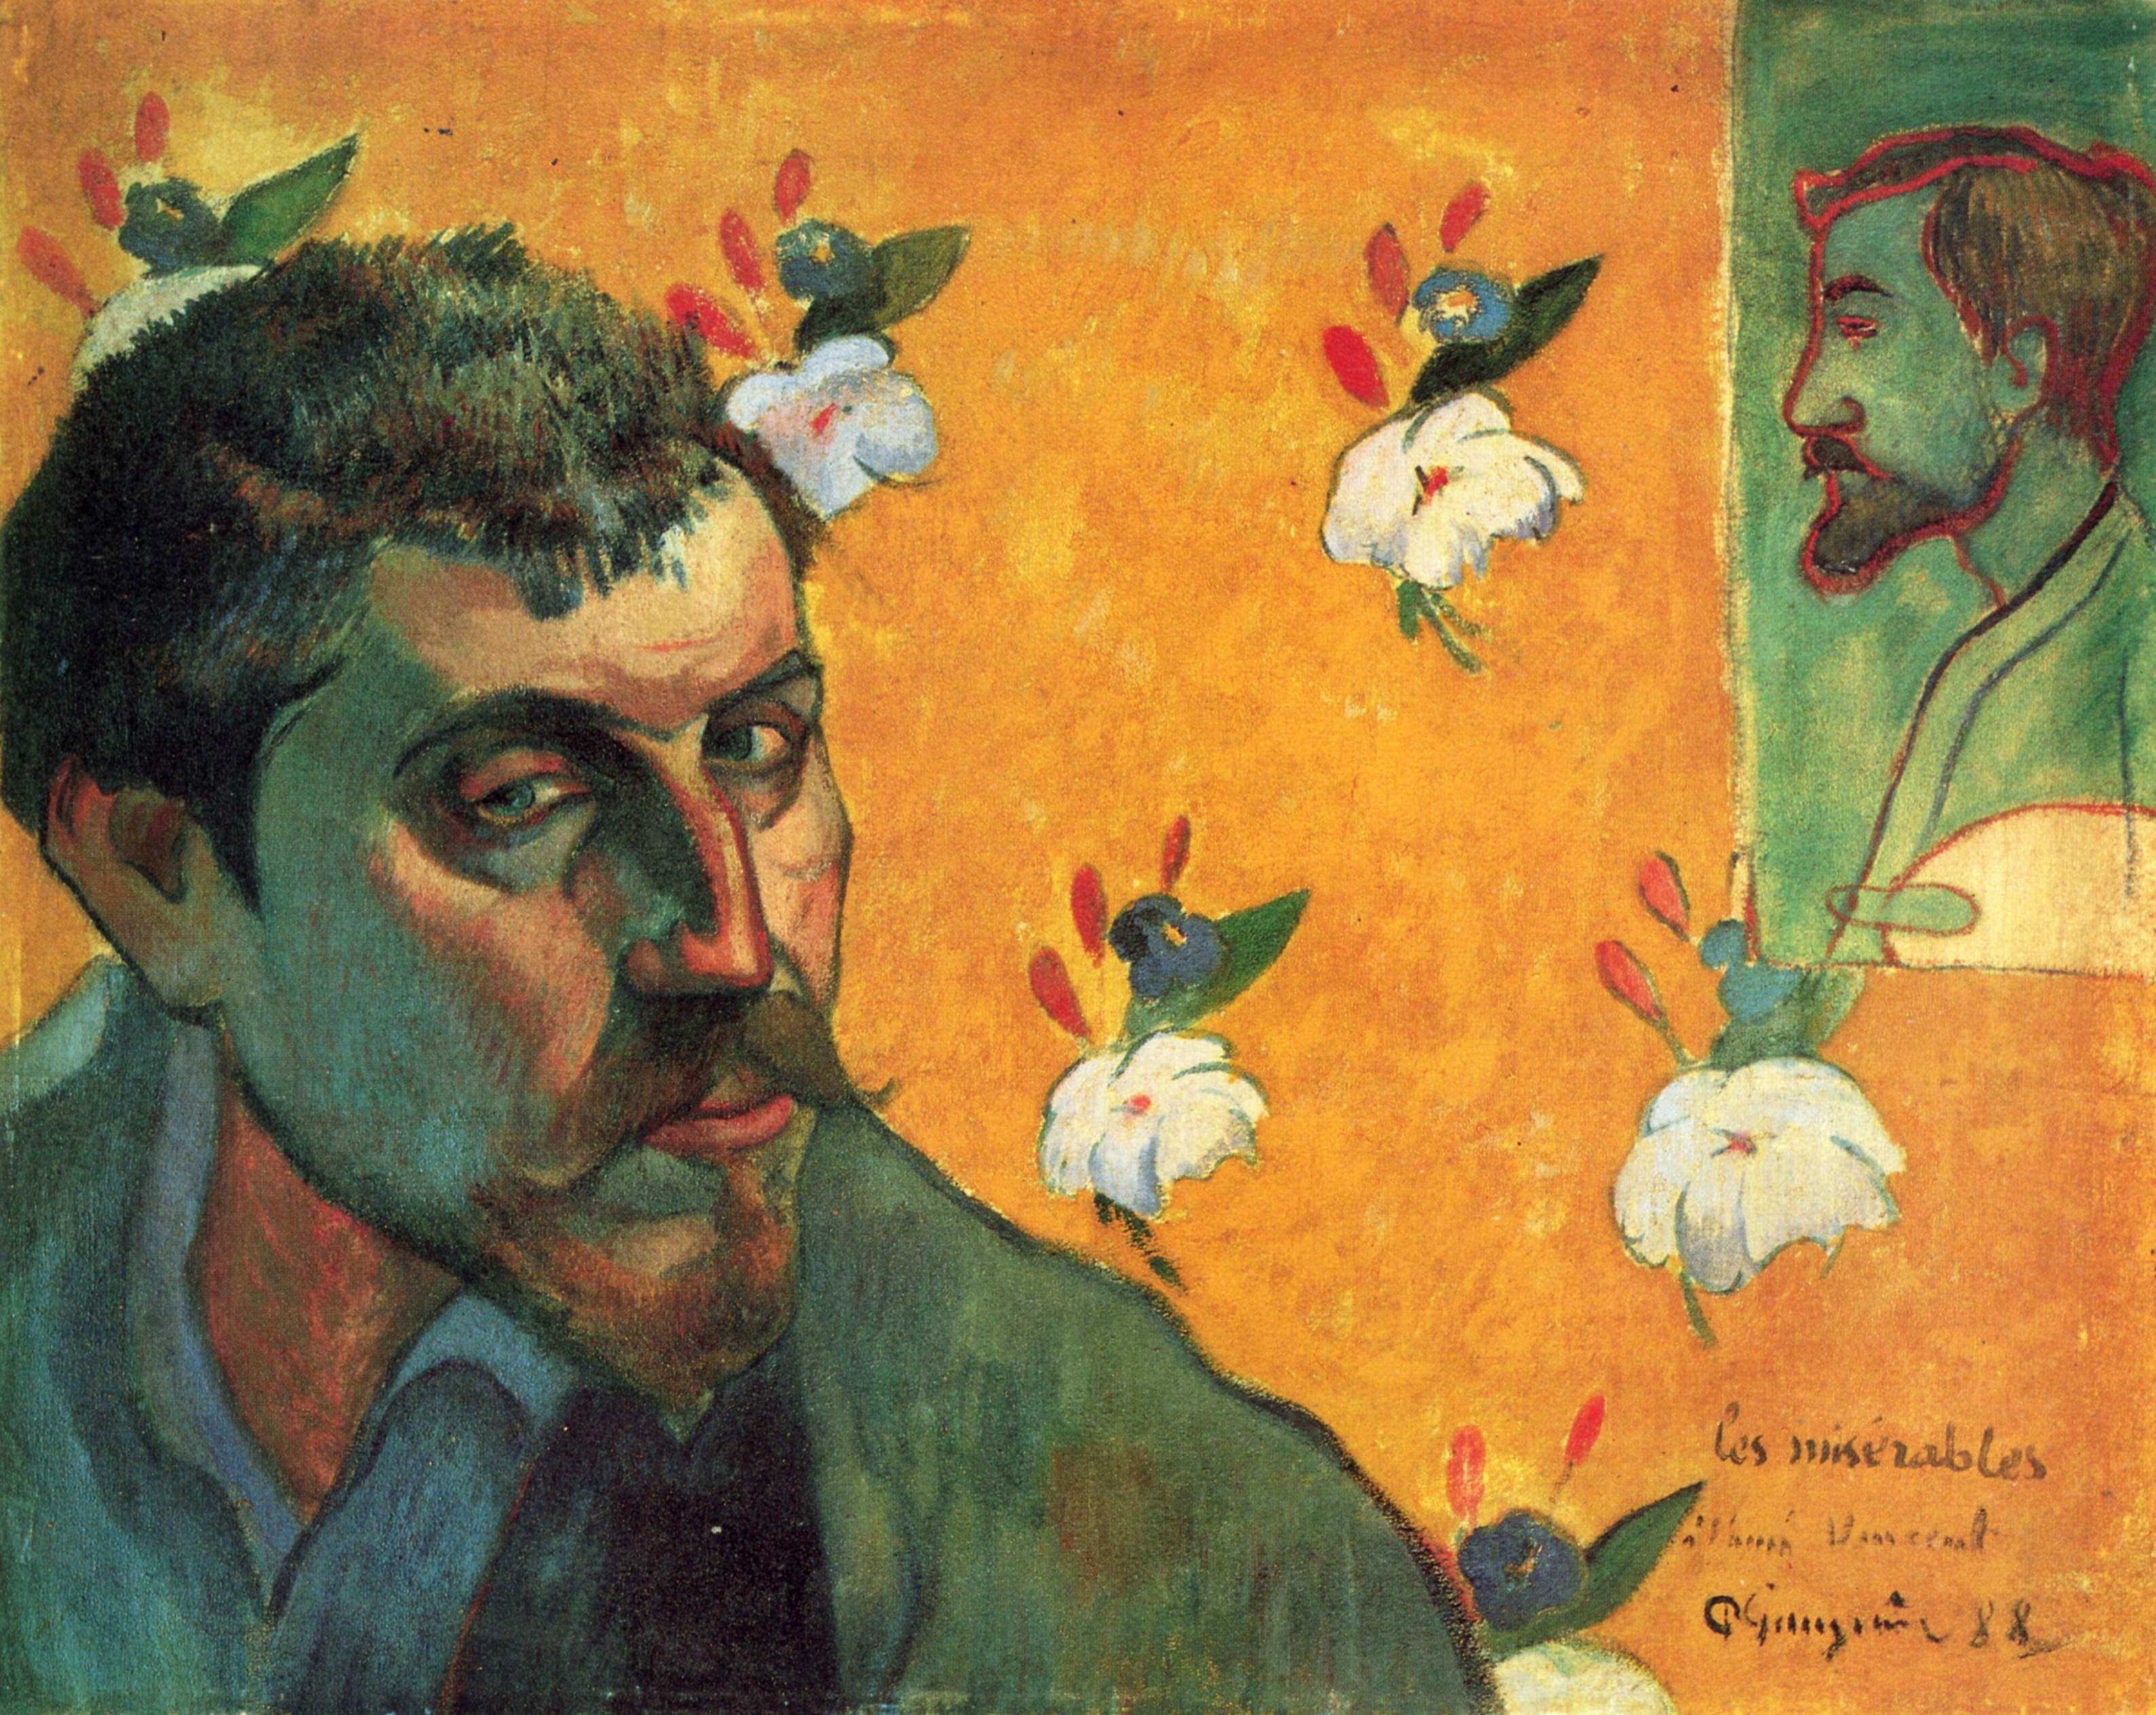 Autorretrato con Émile Bernard by Paul Gauguin - 1888 Van Gogh Museum